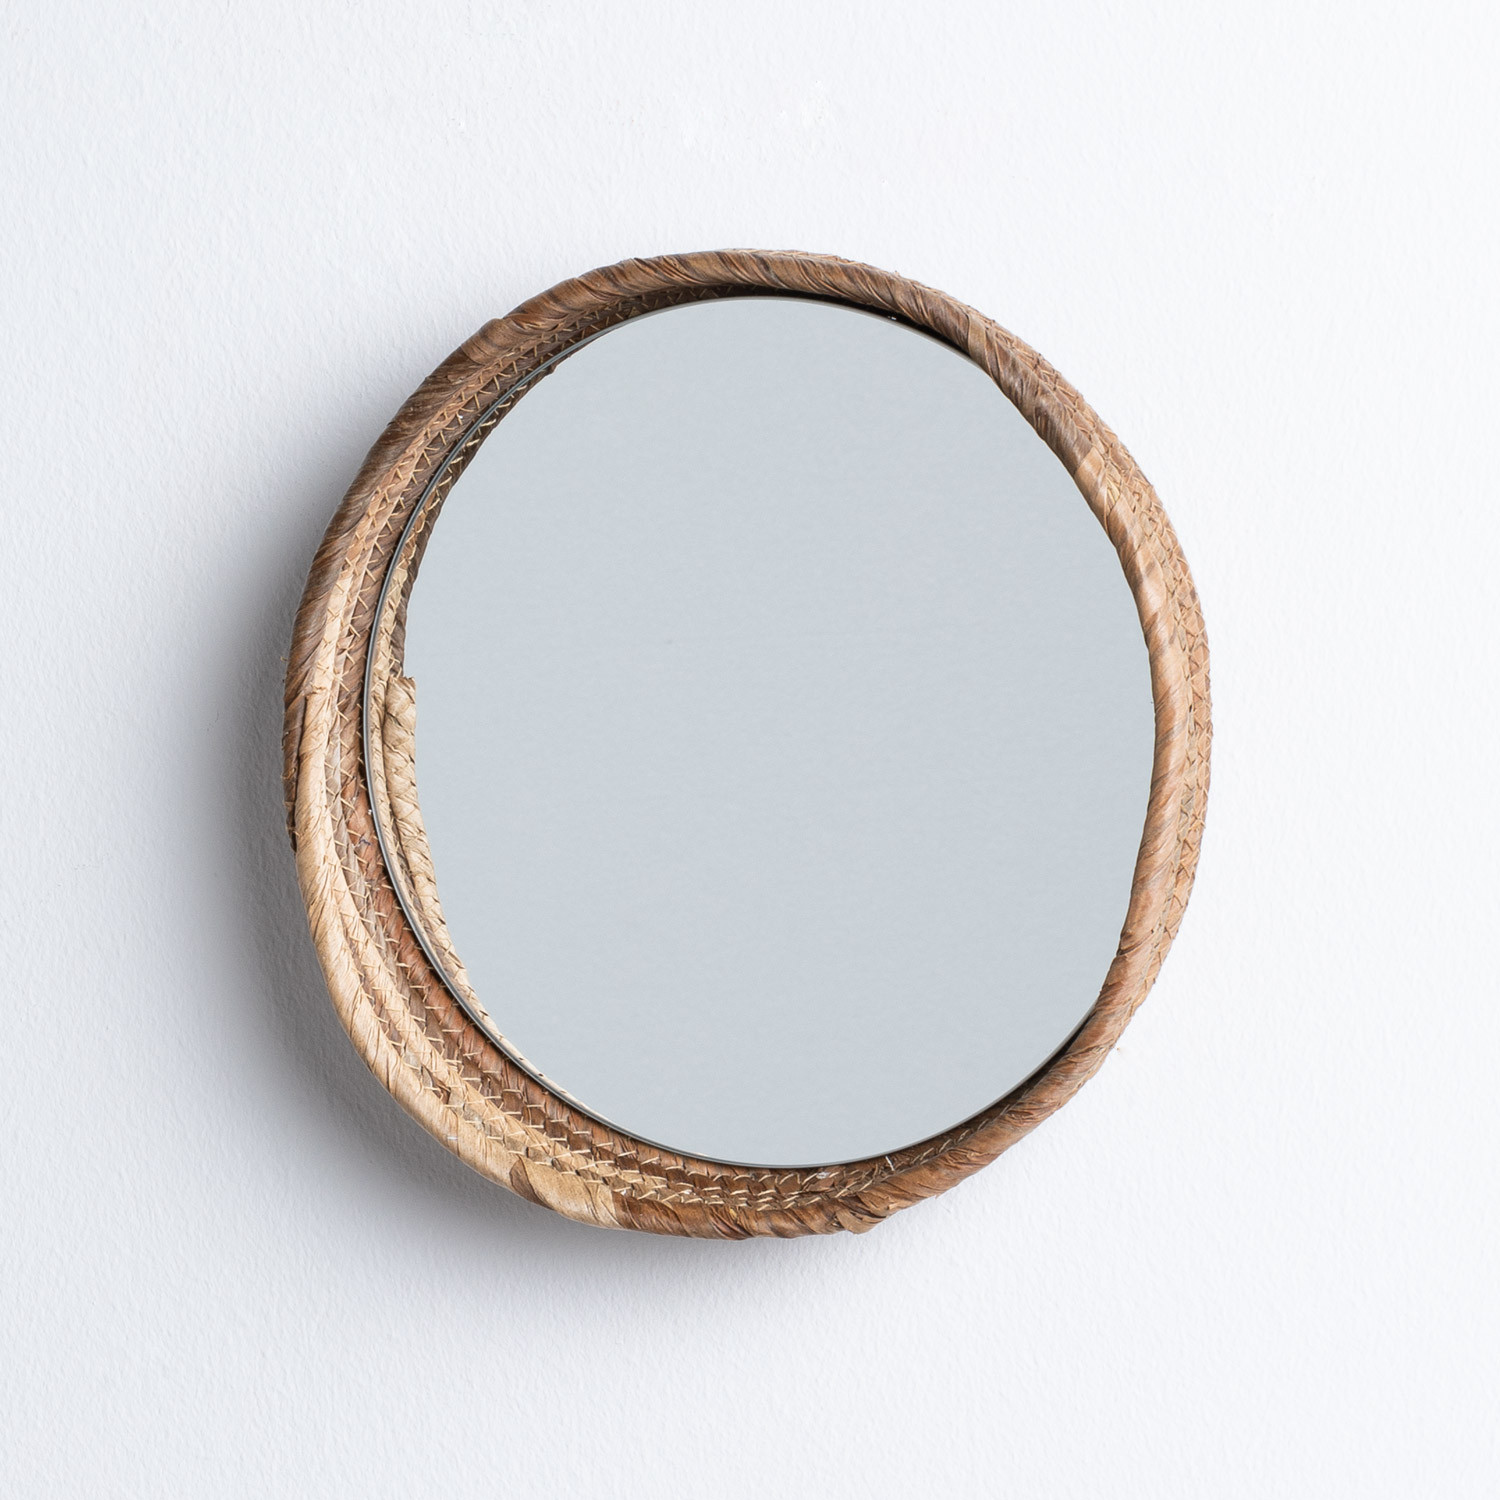 Specchio da Parete Rotondo in Legno (Ø27 cm) Banli, immagine della galleria 2